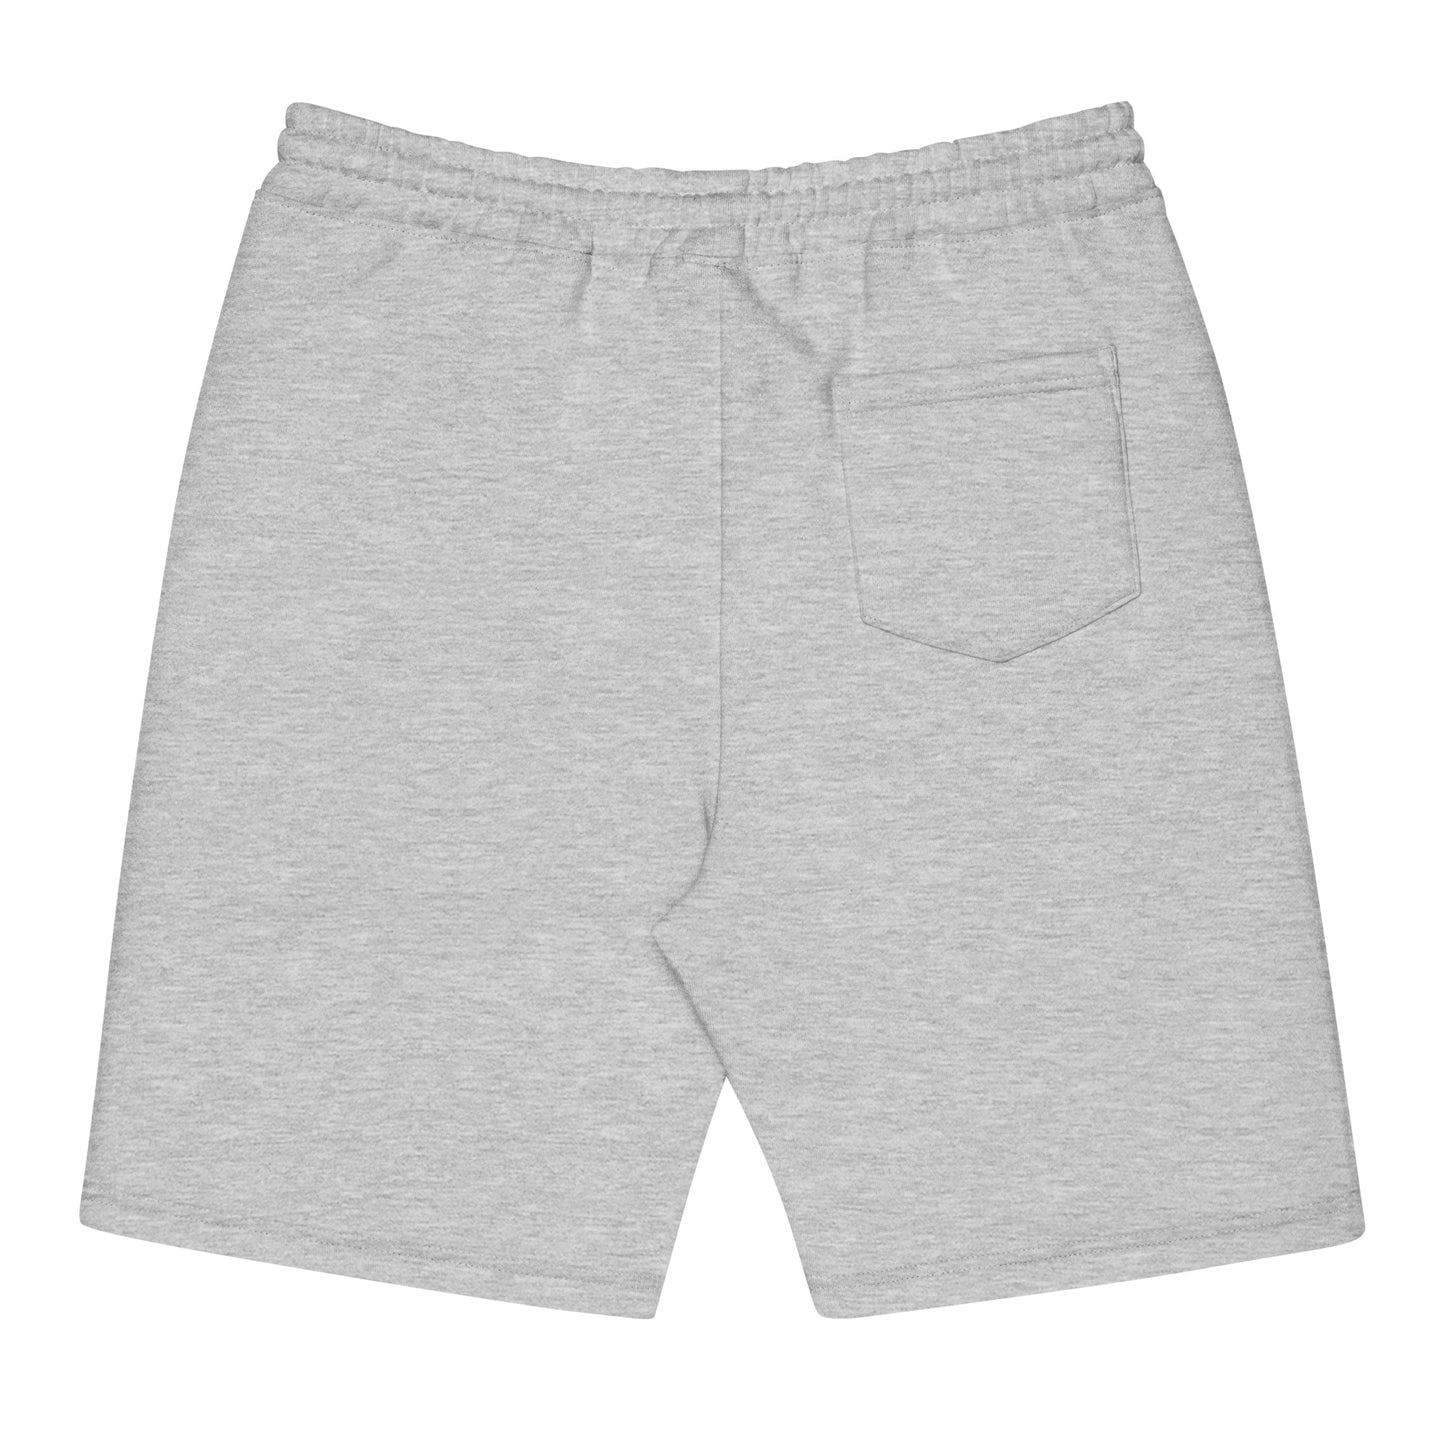 Lavish Luxury Fleece Shorts